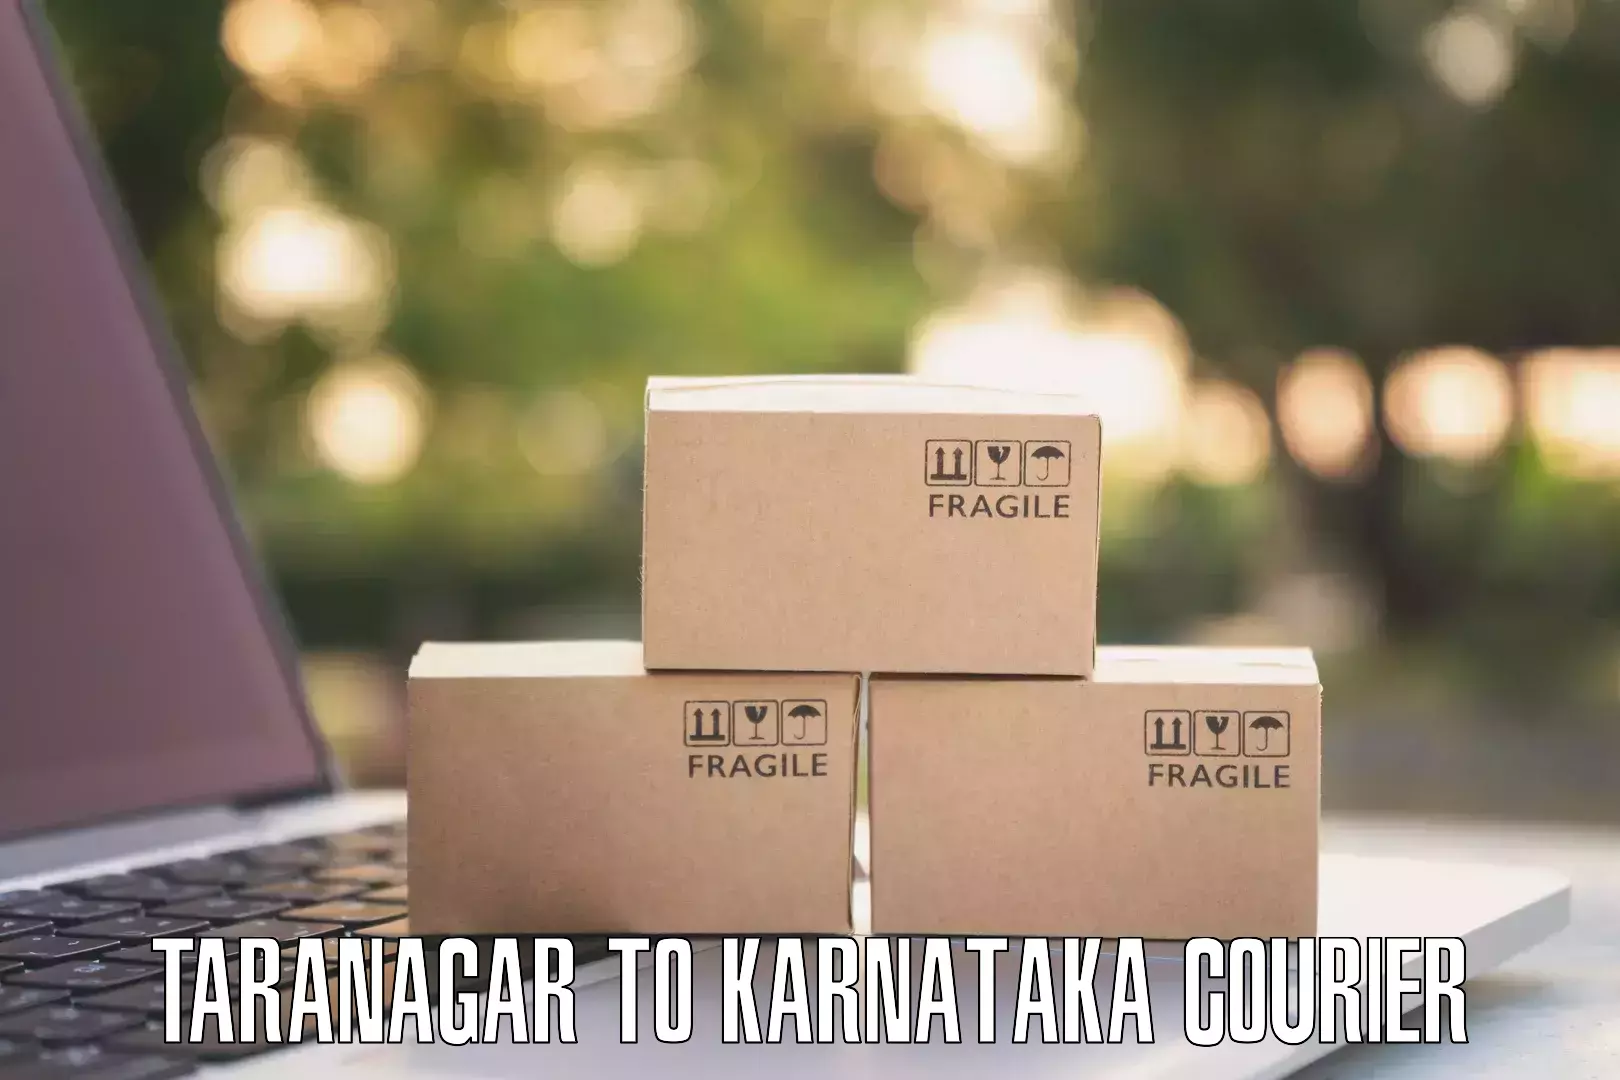 Courier service innovation Taranagar to Alnavar